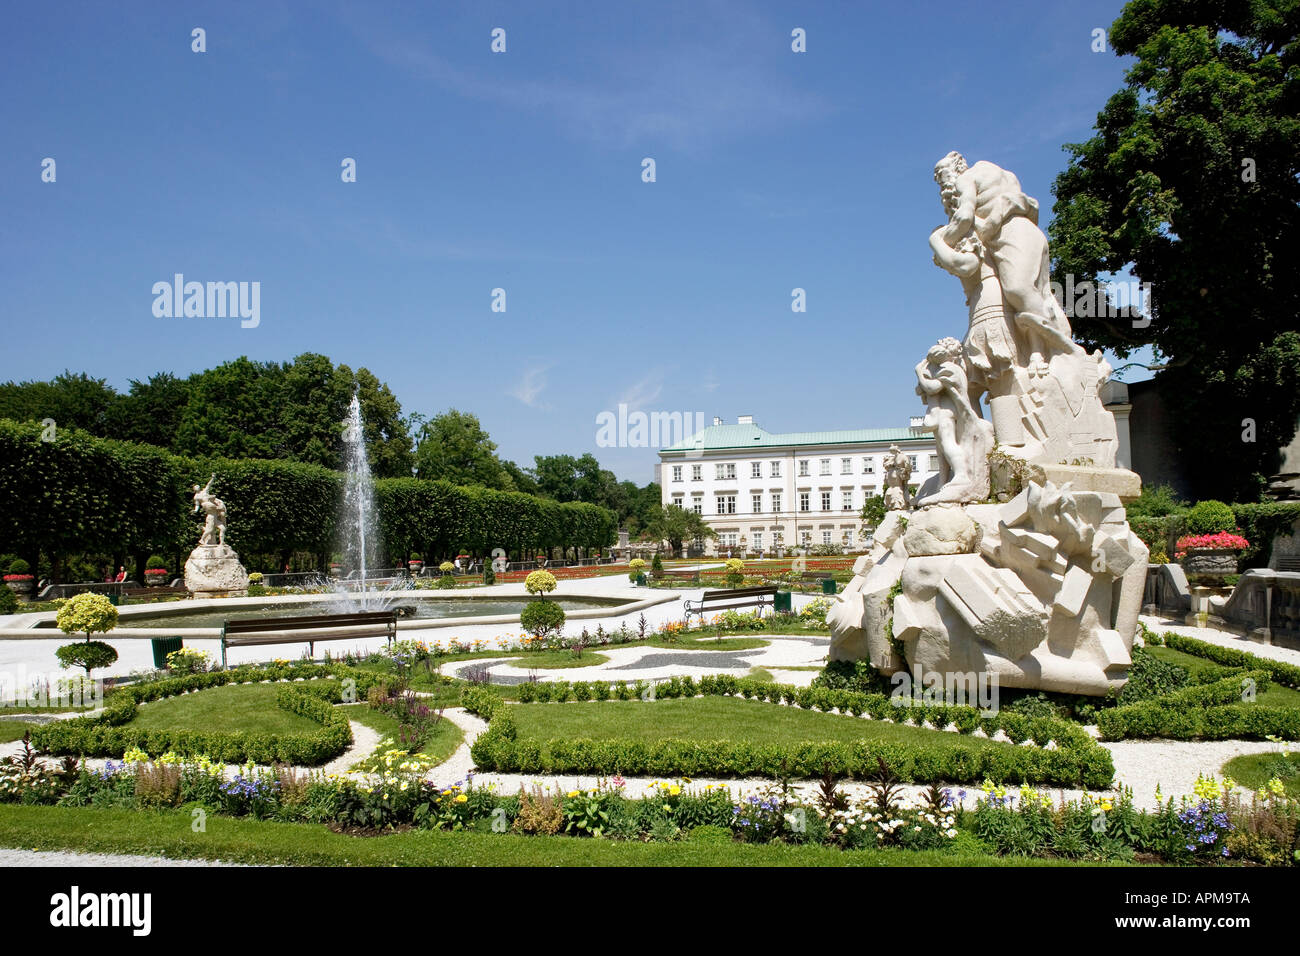 Austria, Salzburg, formal garden Stock Photo